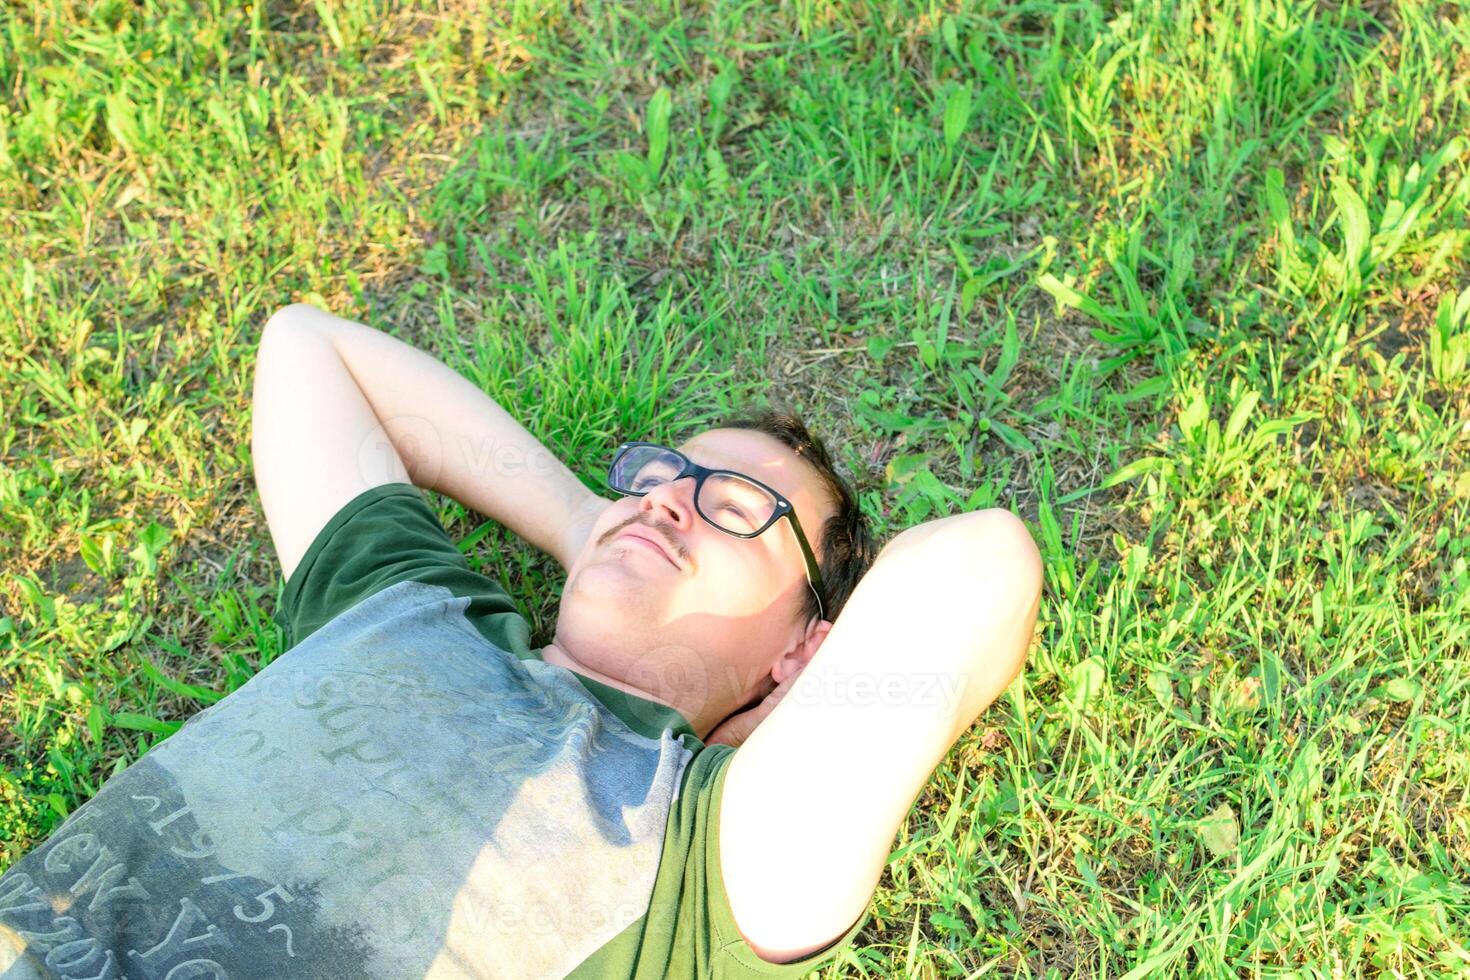 jung Mann mit Brille gelogen auf Gras genießen Ferien nach studieren sehr glücklich foto